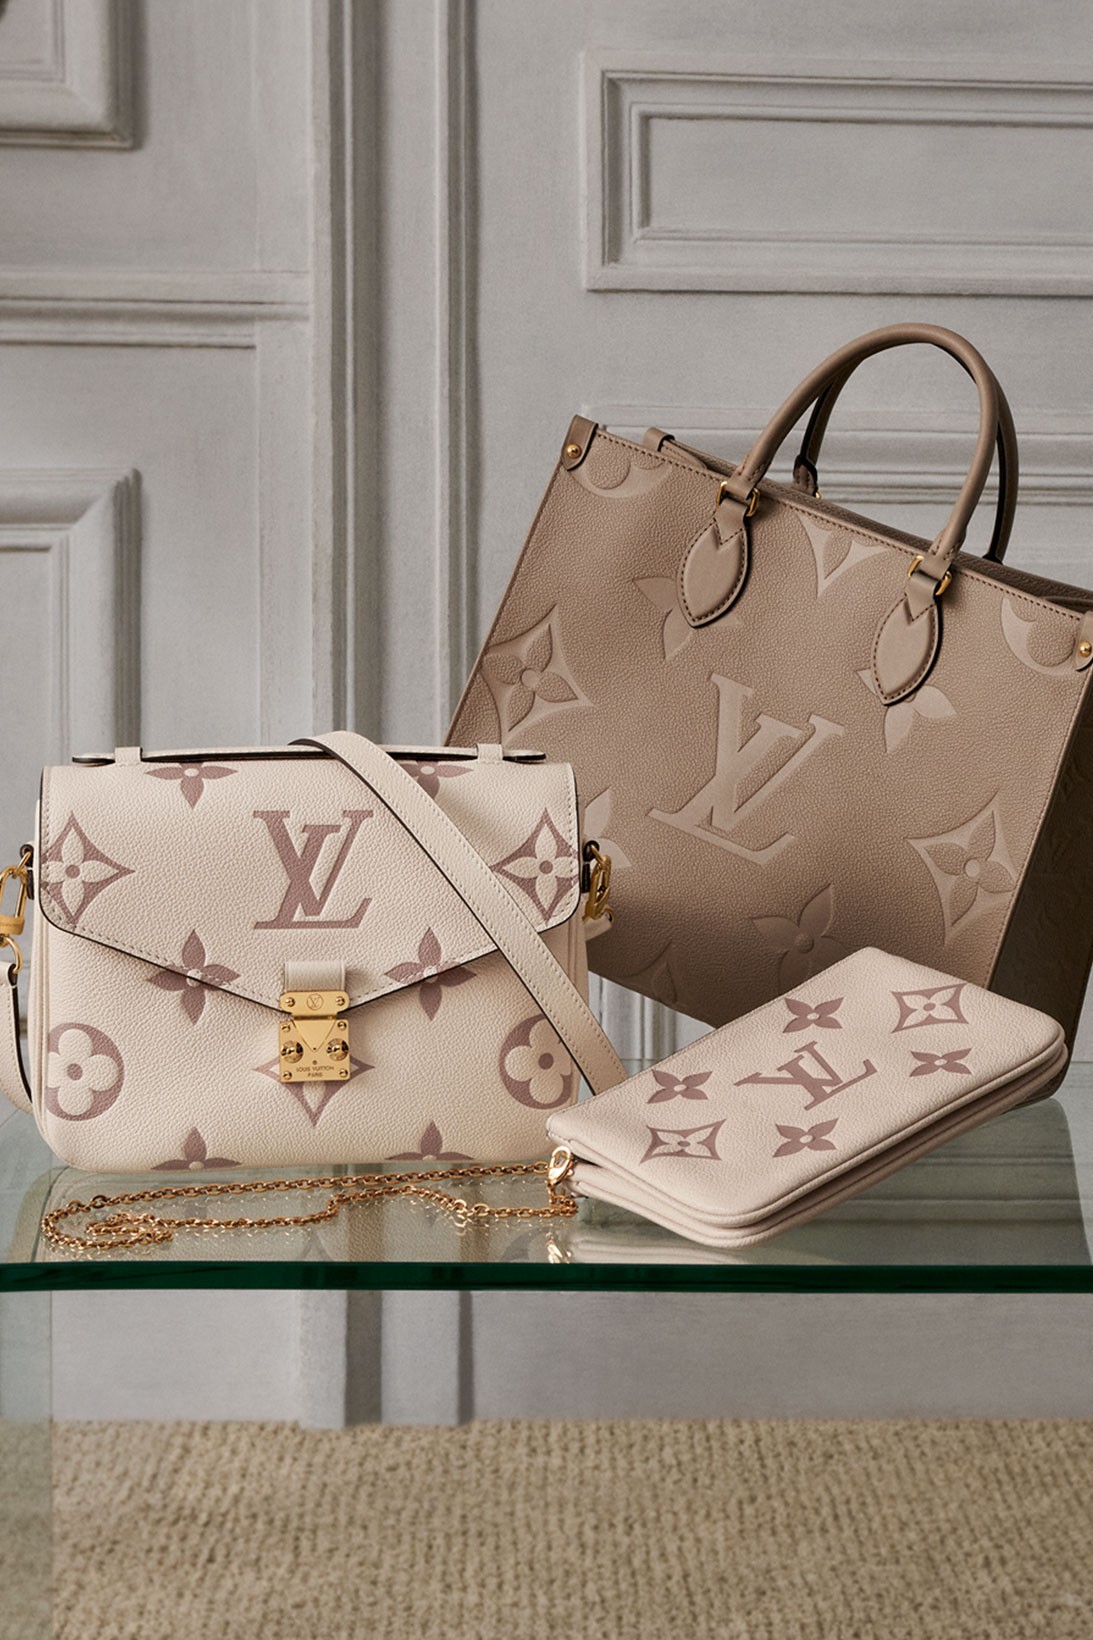 Louis Vuitton представил сумки из новой весенне-летней коллекции (фото 2)